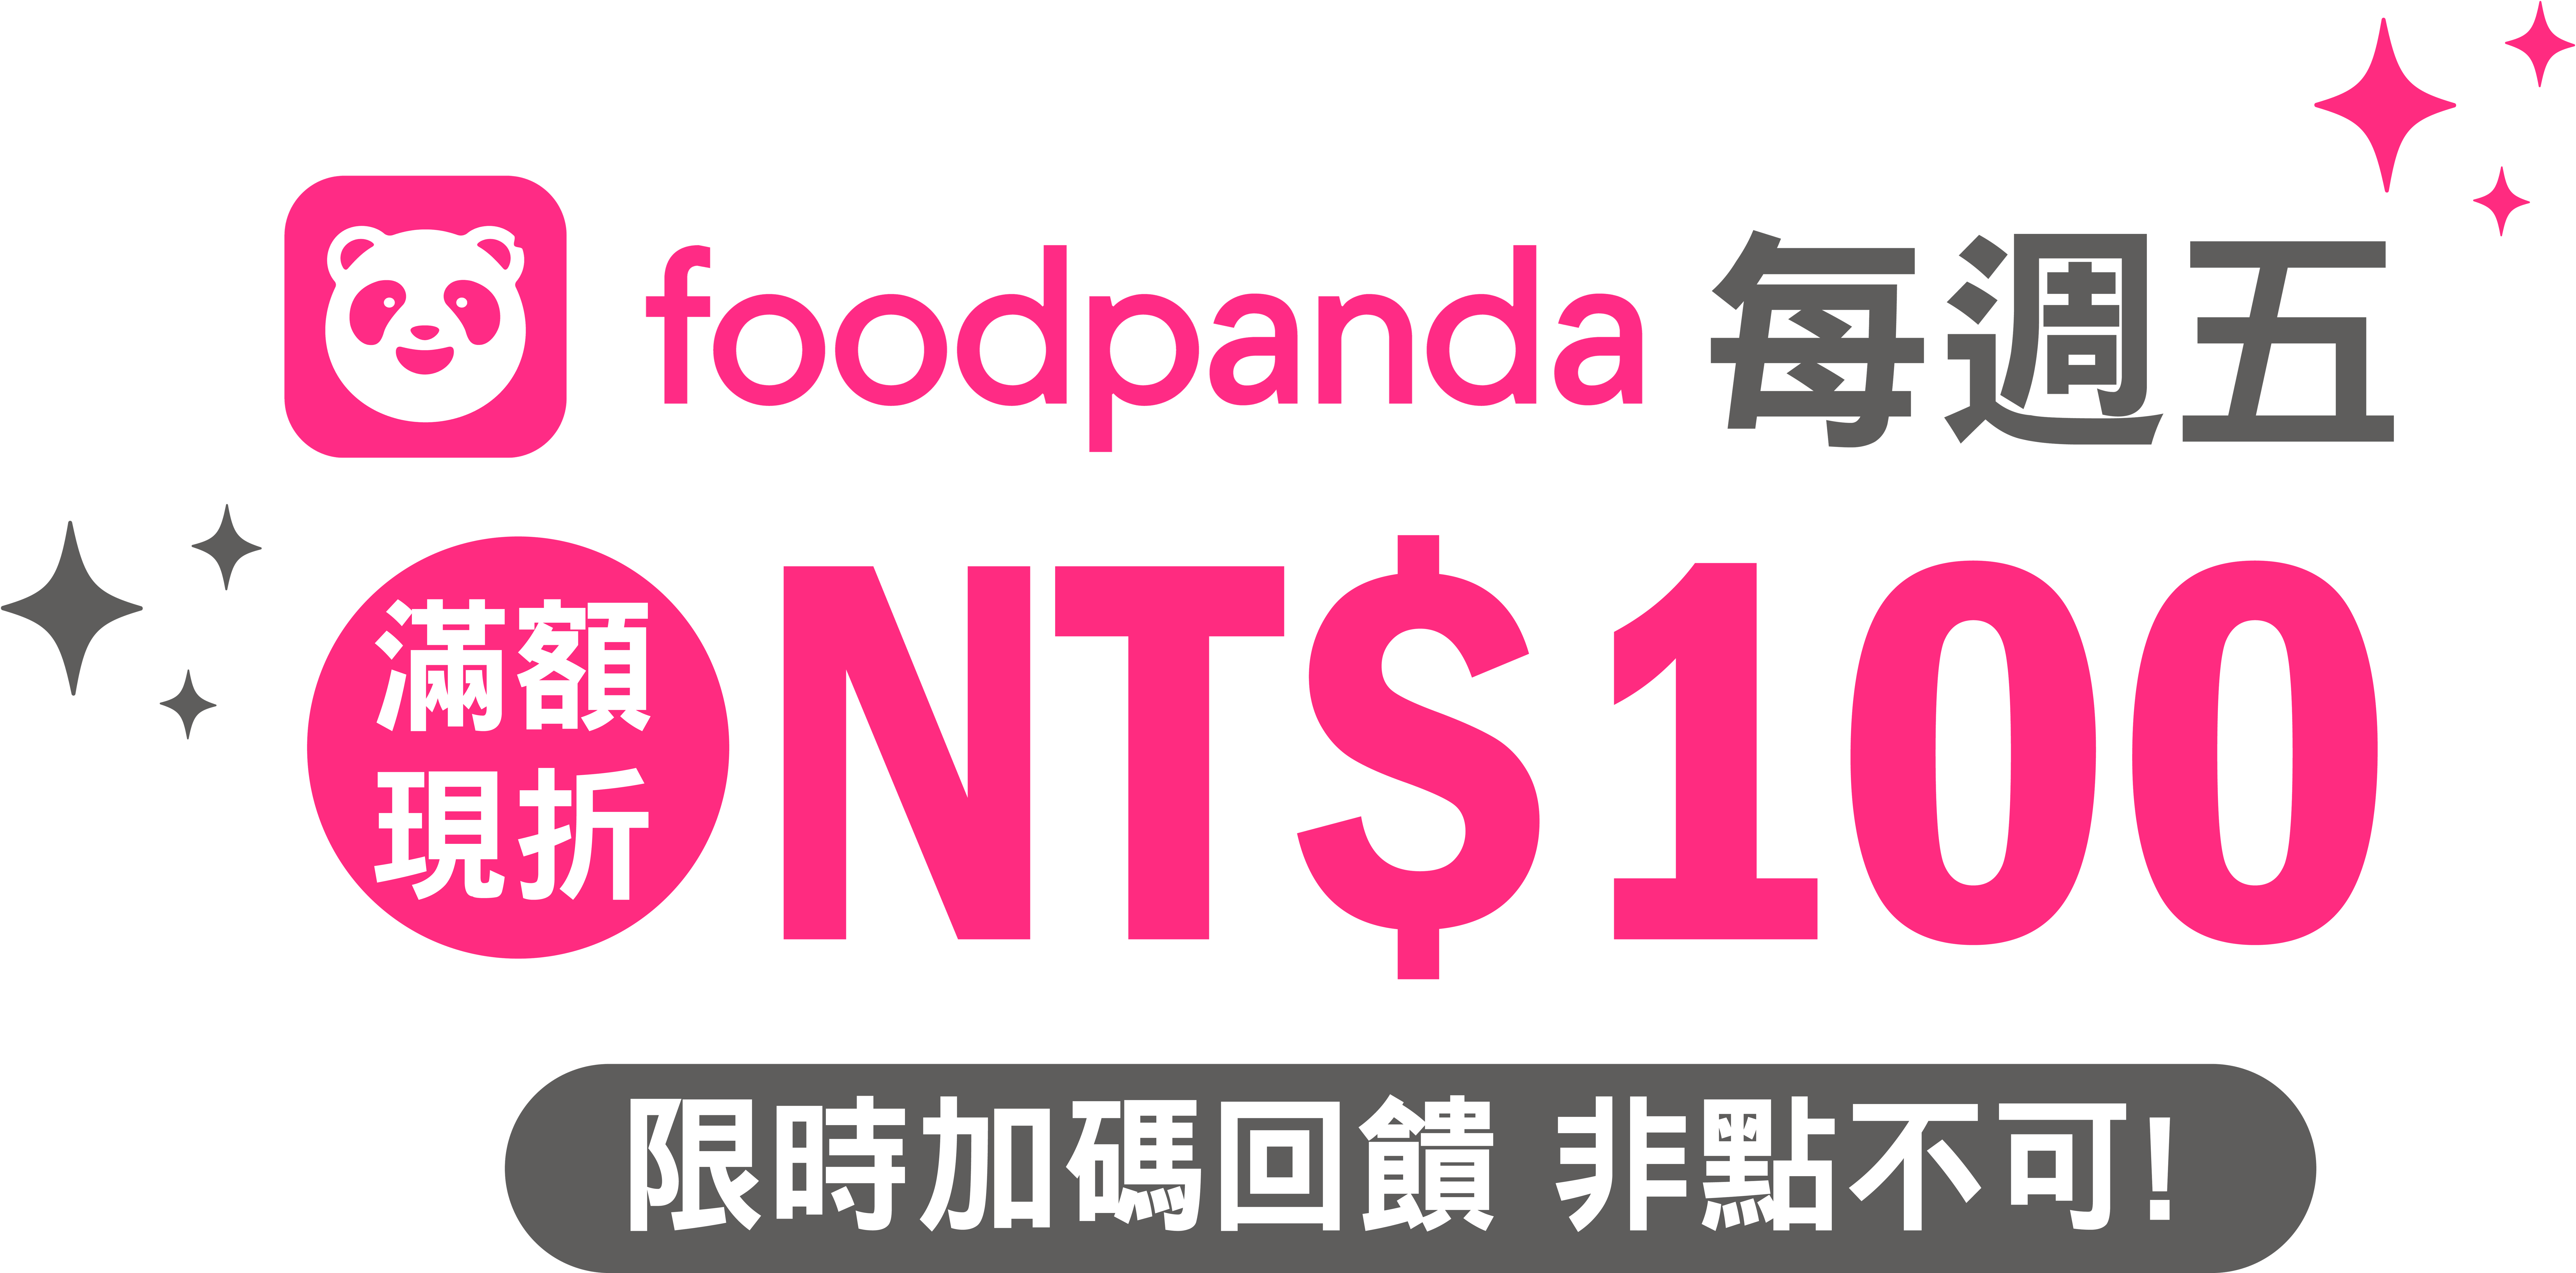 foodpanda 每周五 滿額現折 NT$100 / 現時加碼回饋 非點不可!